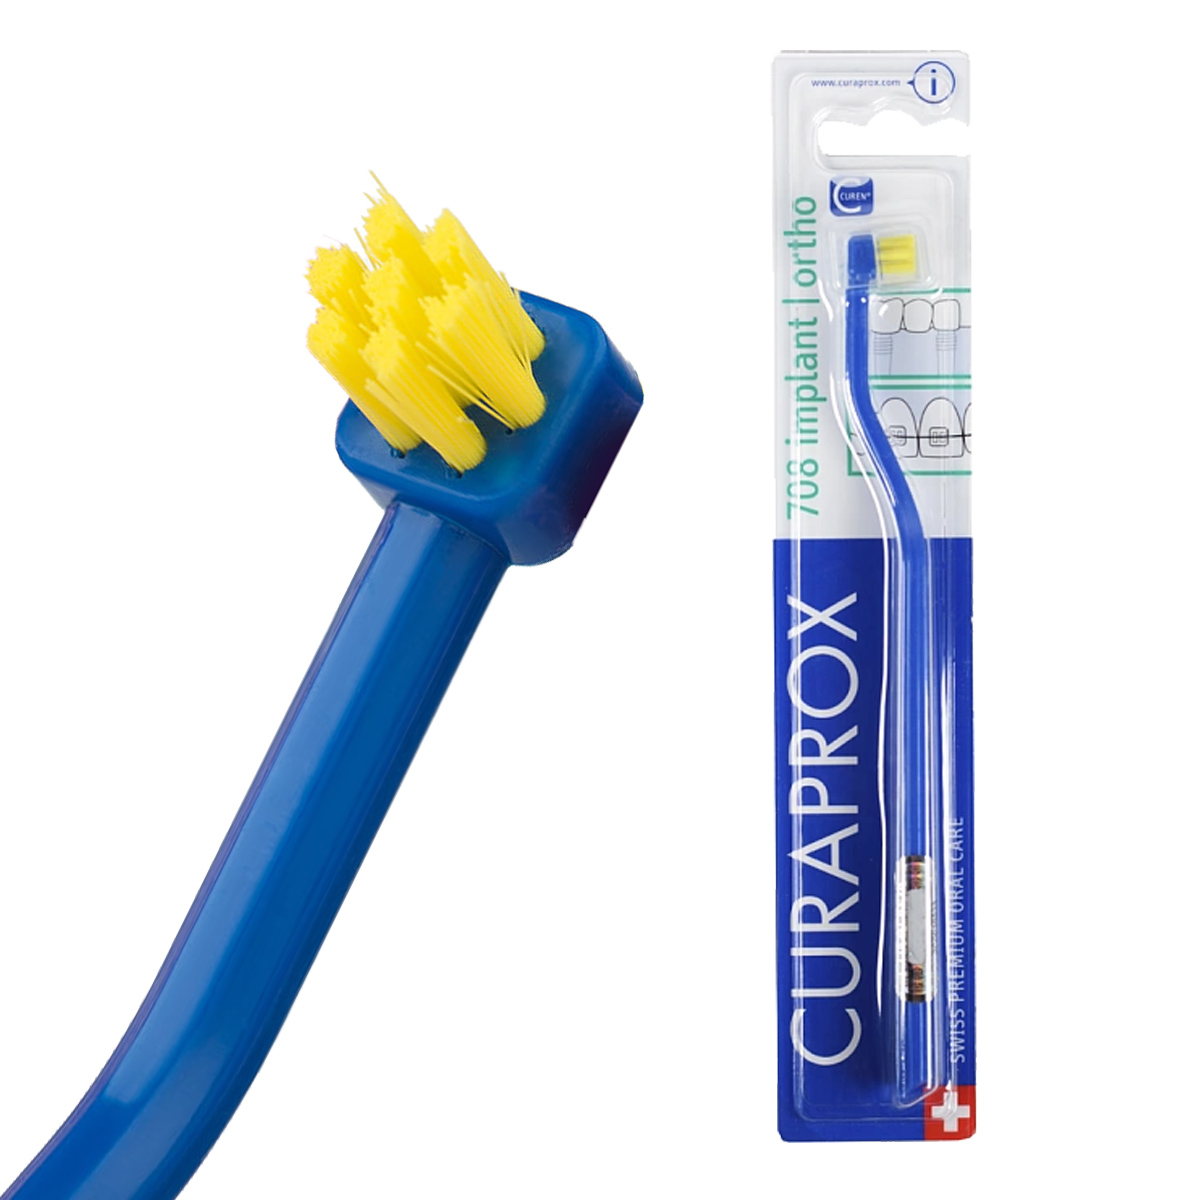 Зубная щетка Curaprox Implant Ortho 708 для имплантов и ортоконструкций curaprox щетка implant ortho для имплантов и ортоконструкци 1 шт